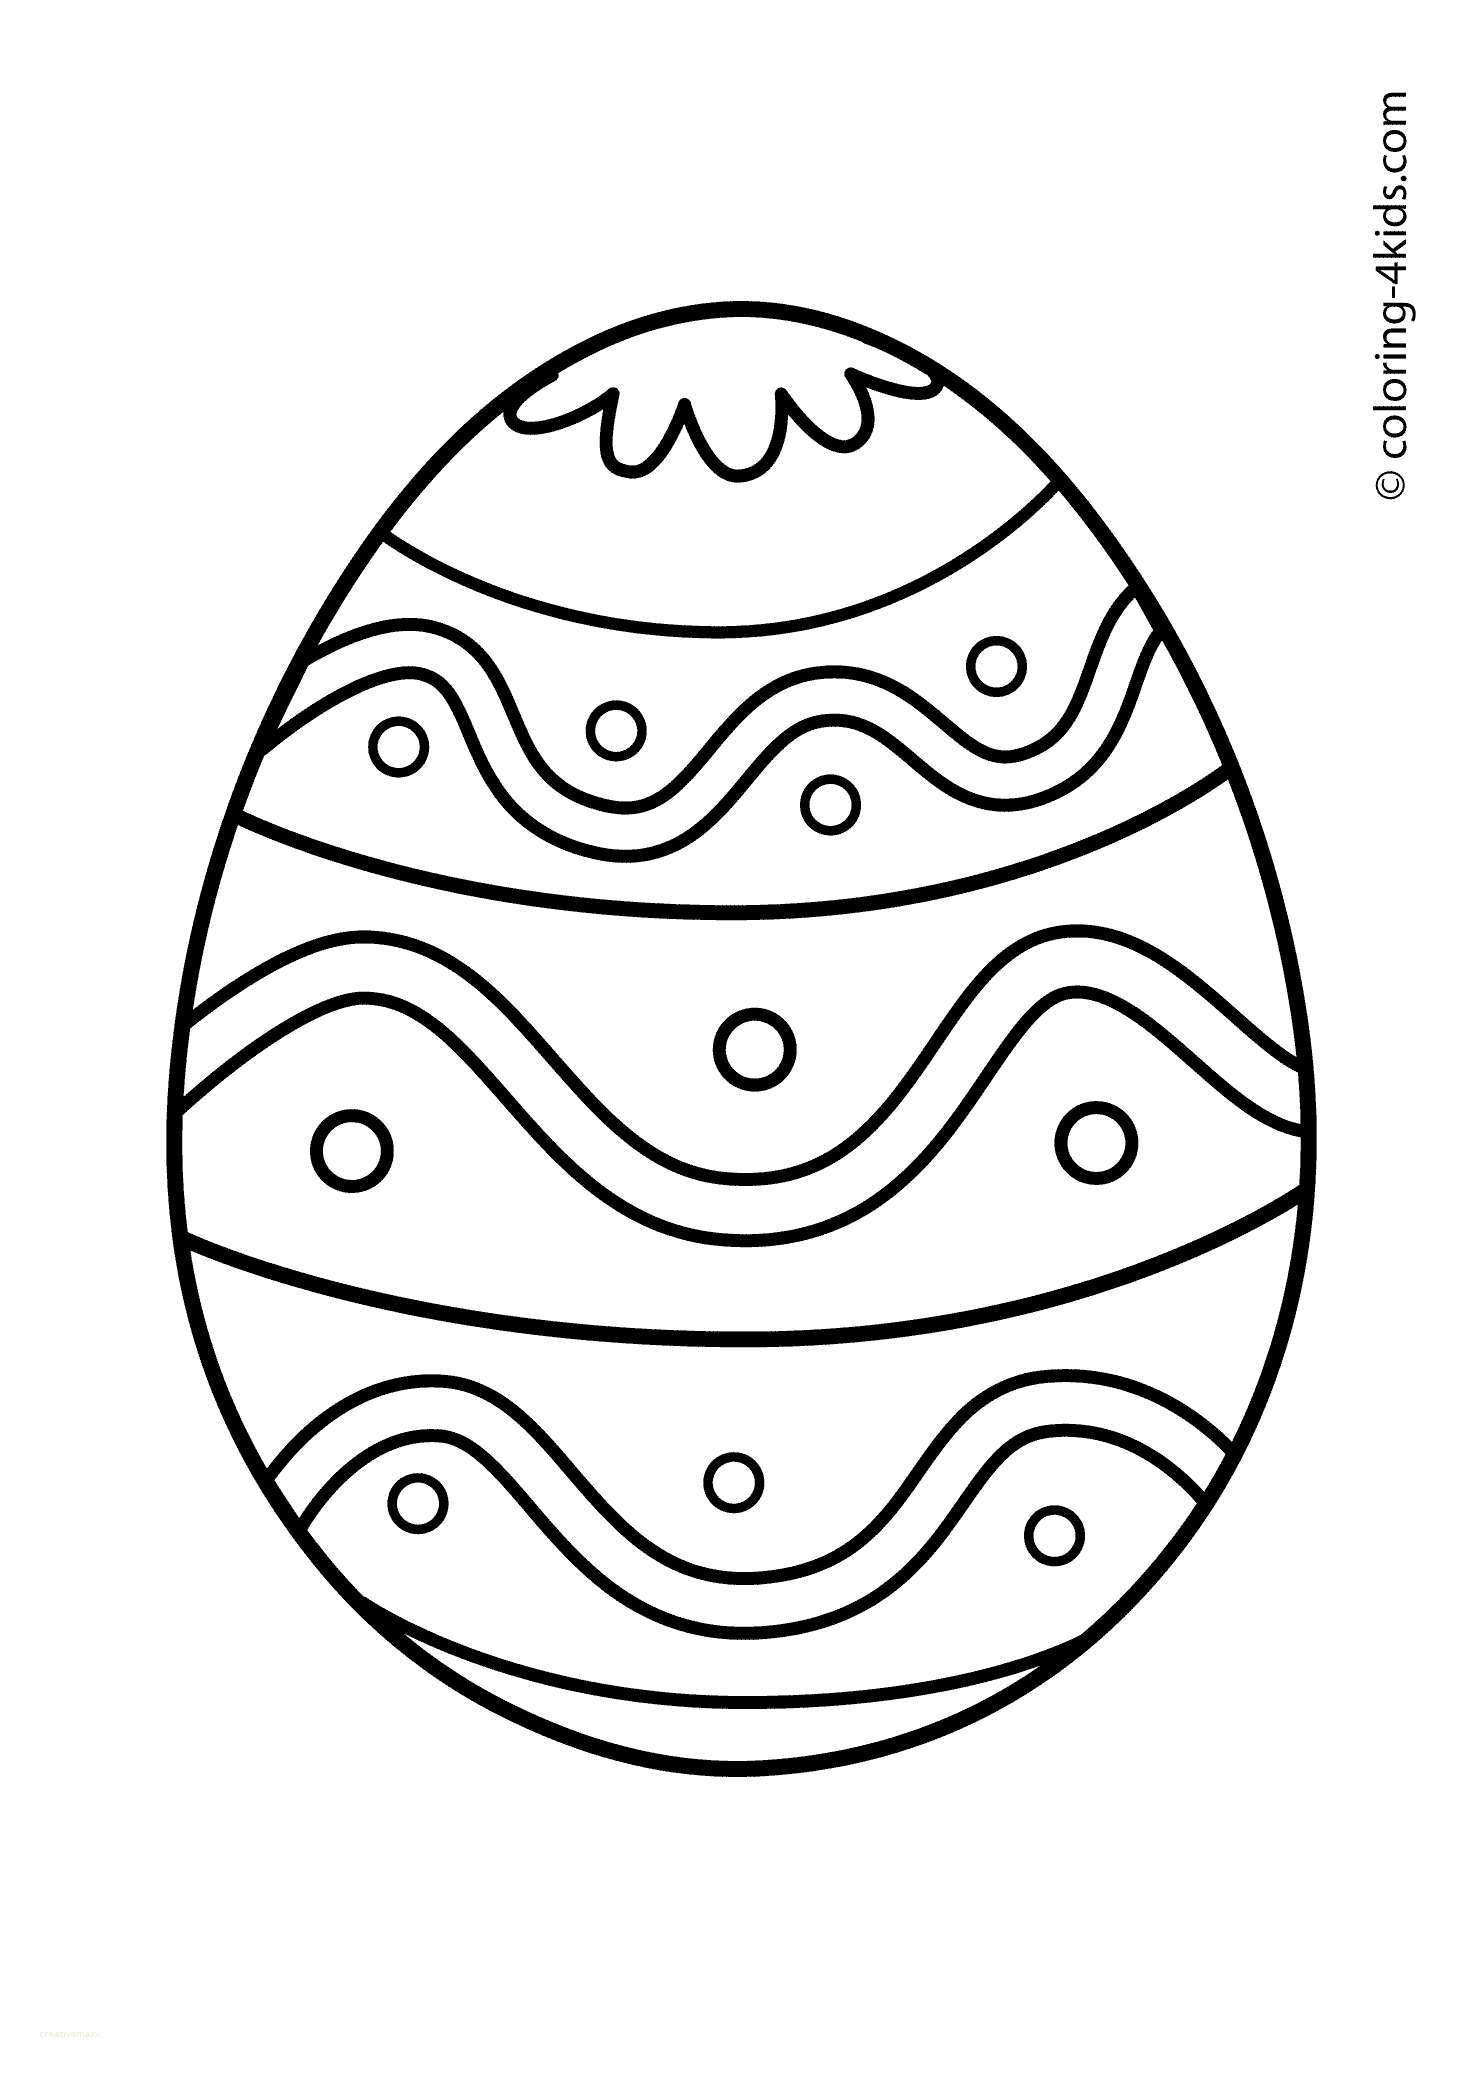 Black And White Easter Egg Clipart.